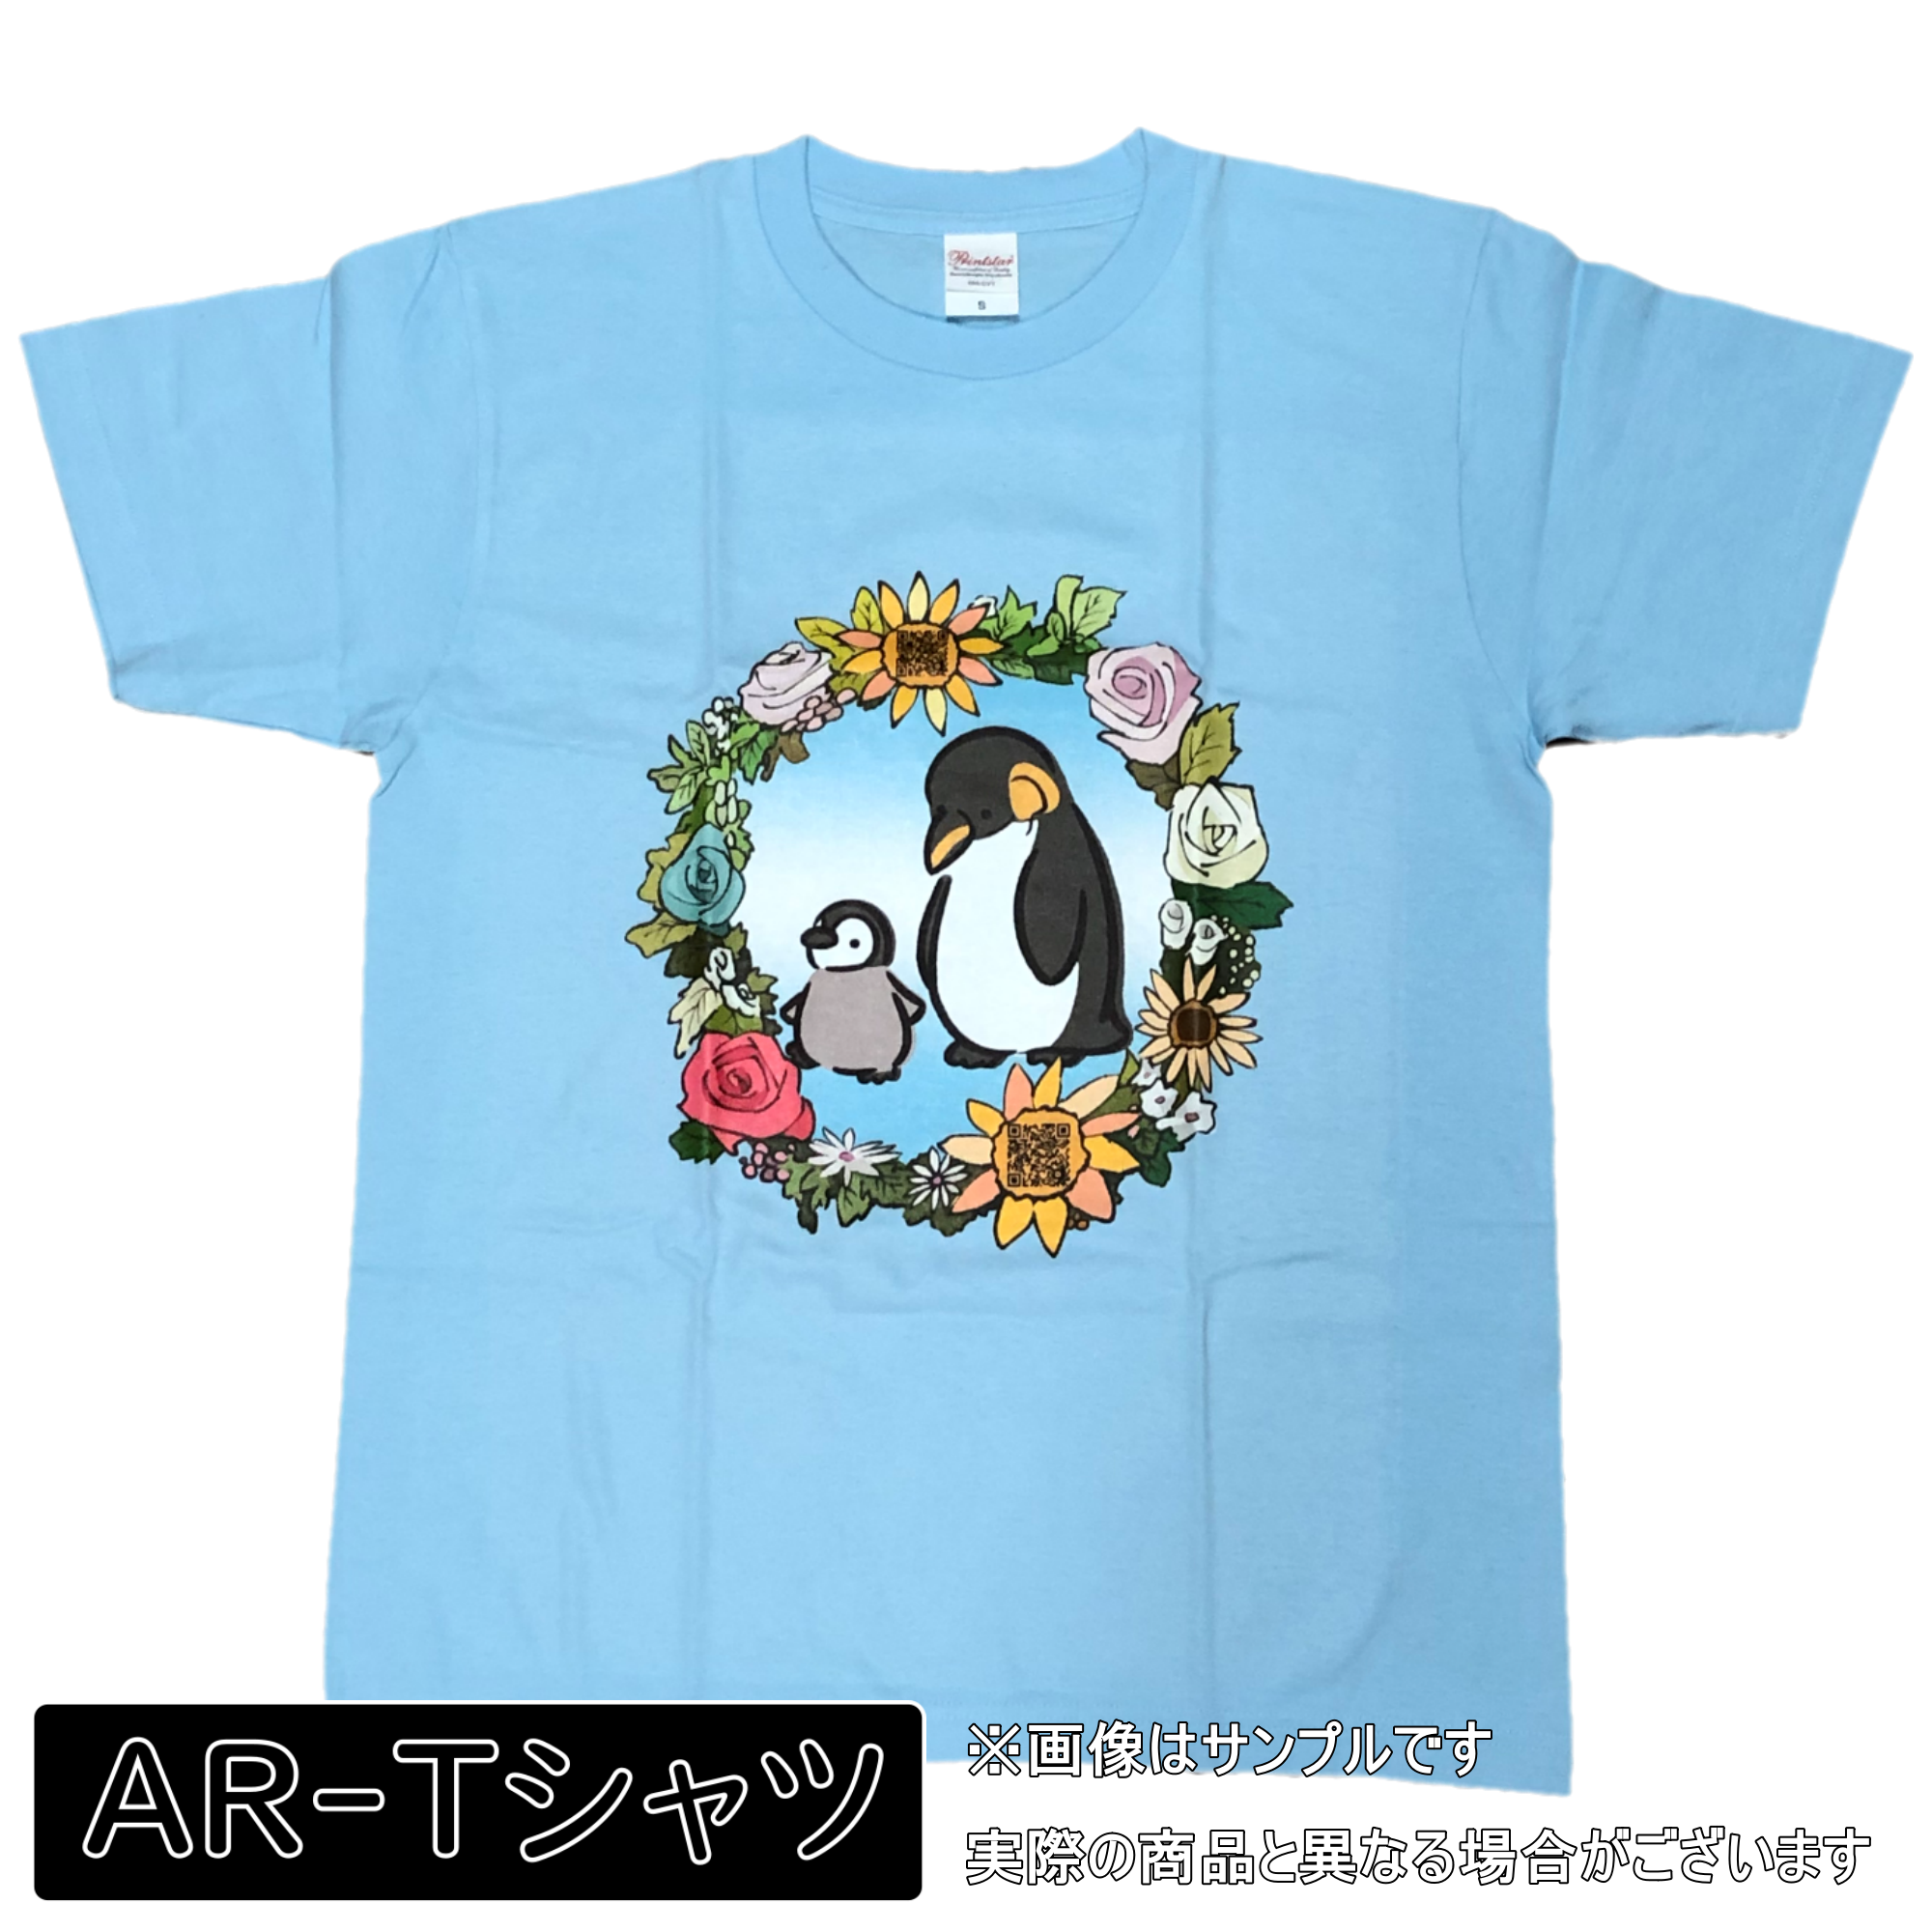 Ar Tシャツ かわいいペンギンの親子 150サイズ Sサイズ イルカのtシャツ屋さん By Peach Rt